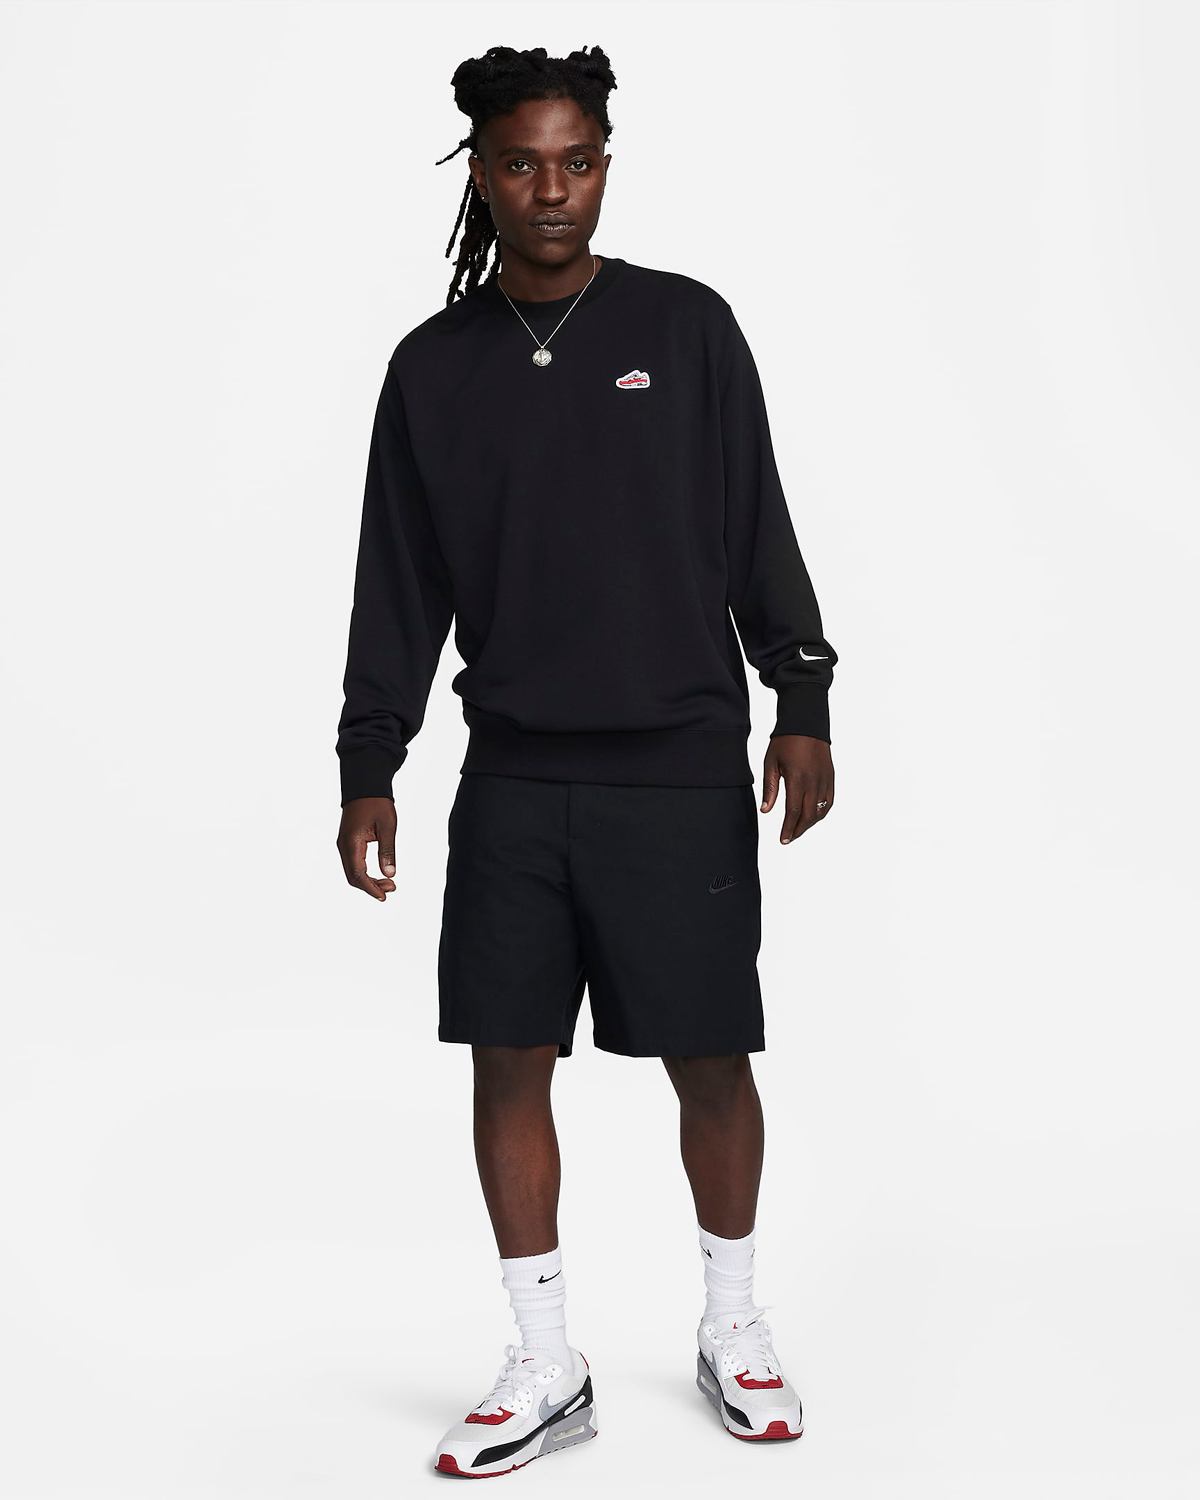 Nike Air Max 1 Sweatshirt Black